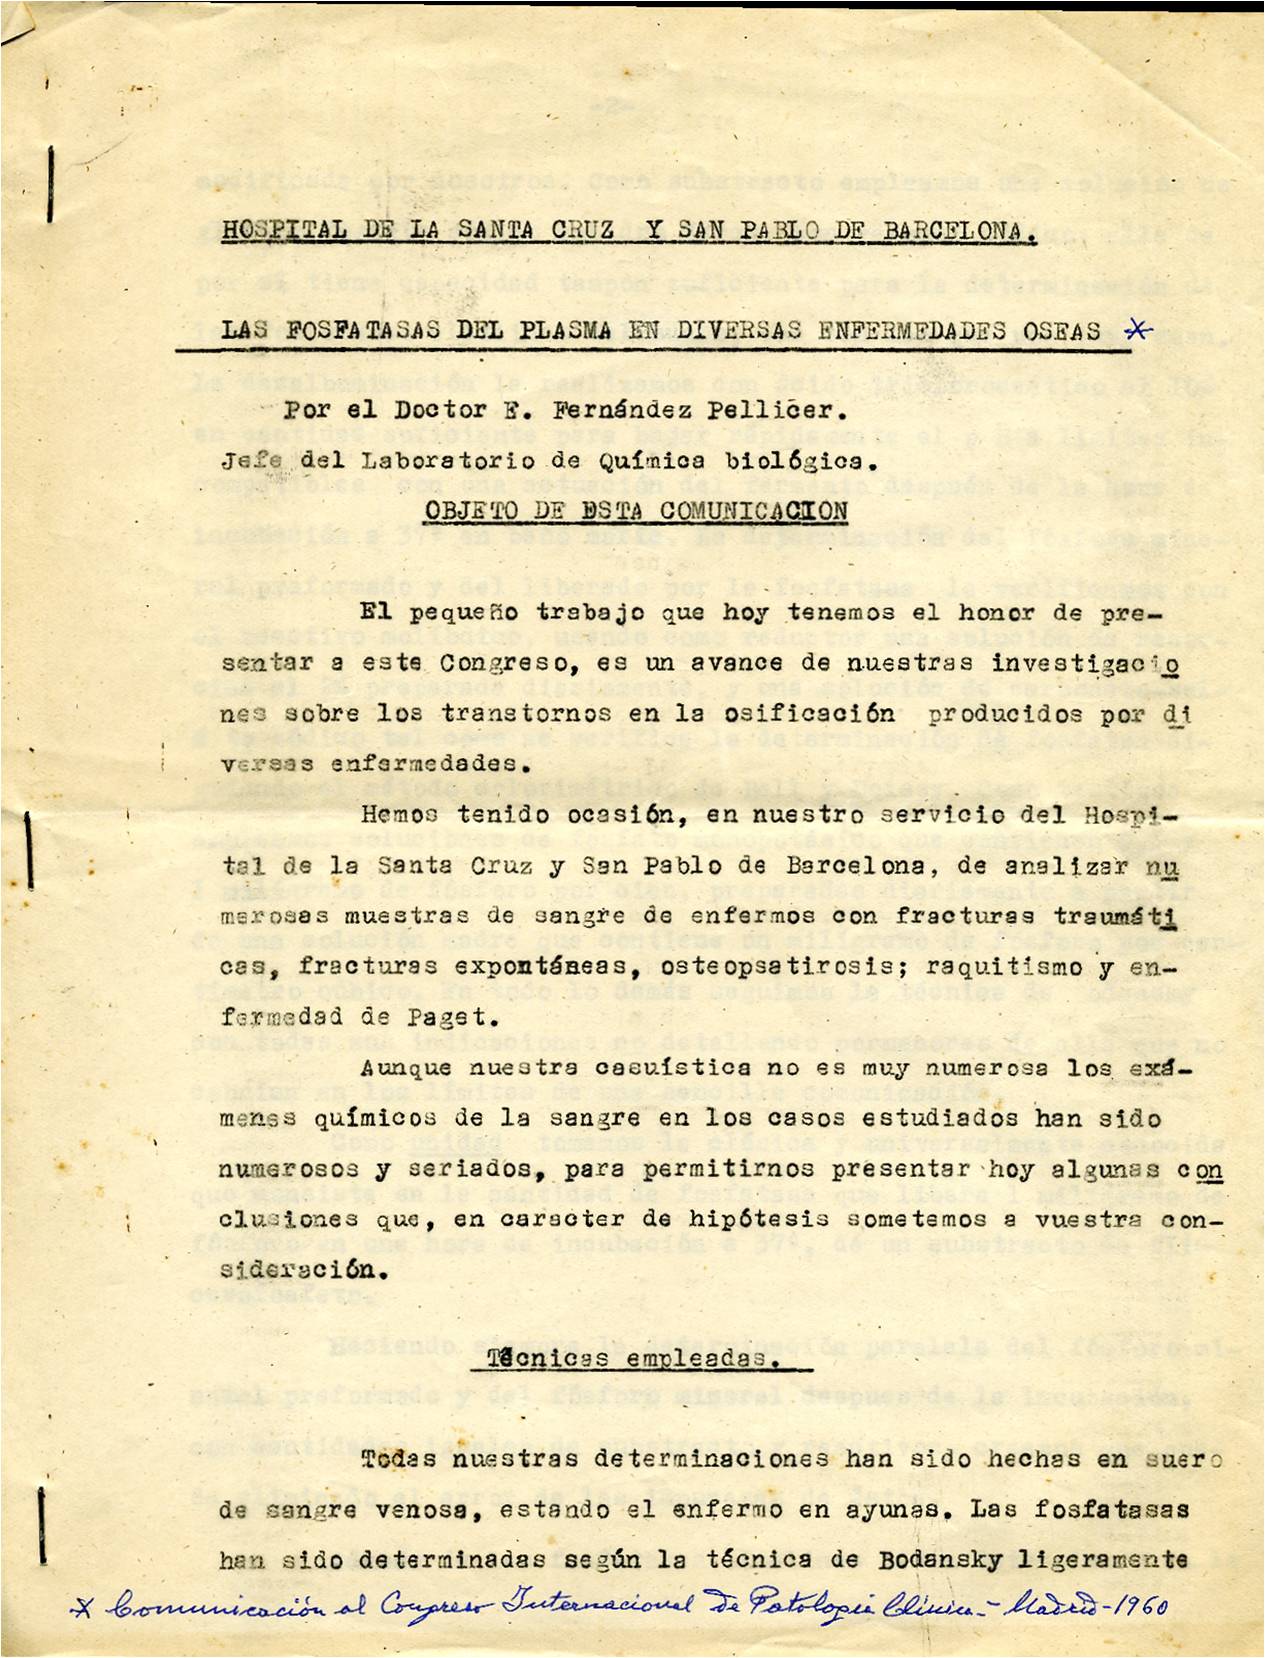 Comunicació del Dr. Fernández Pellicer en el Congrés Internacional de Patologia Clínica, Madrid, 1960.